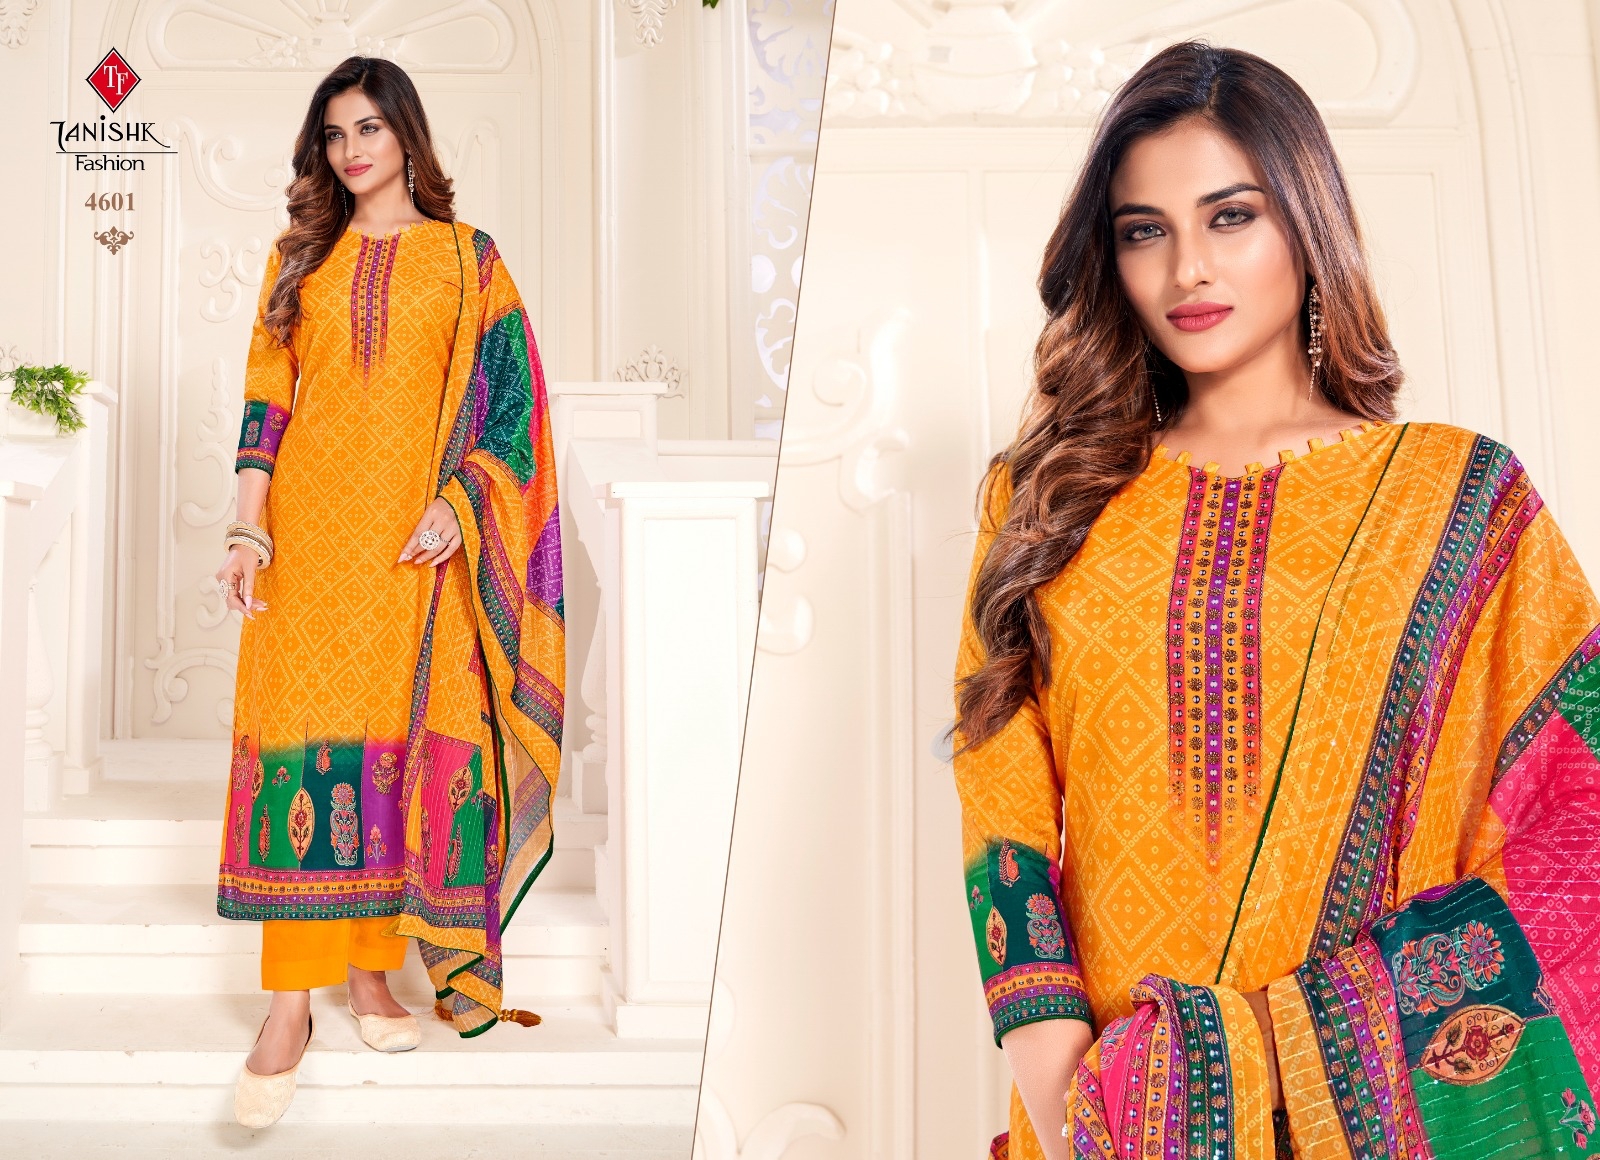 Tanishak Fashion Ek Punjabi Kudi 4601